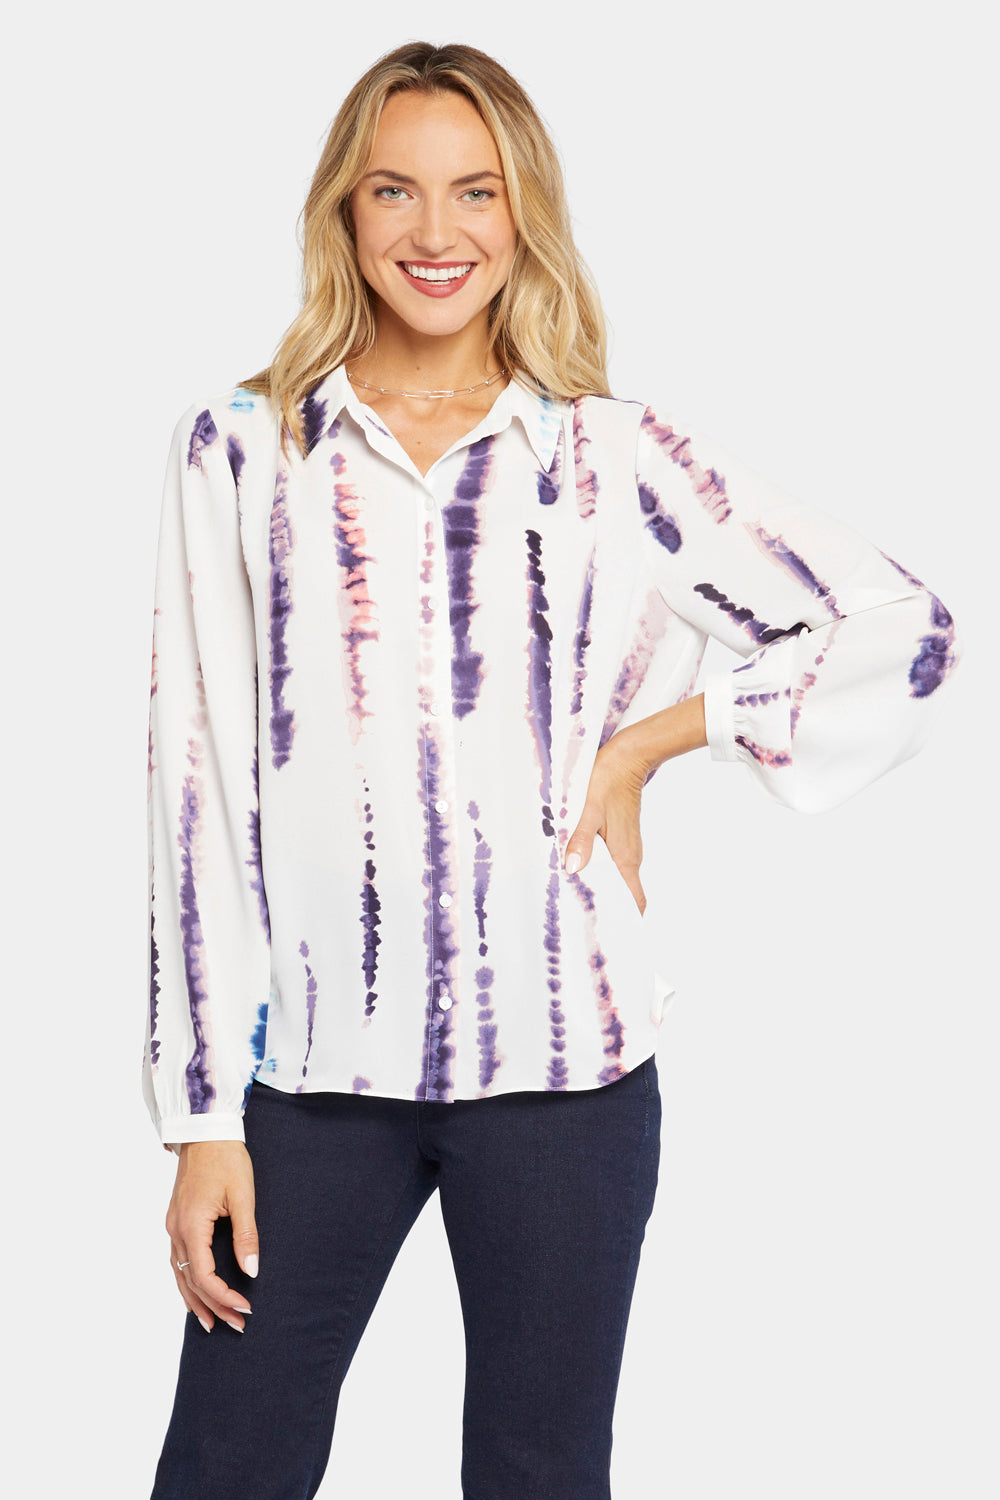 Pejock Women's Blouses Casual Tie-Dye Printed Petal Sleeve T Shirt